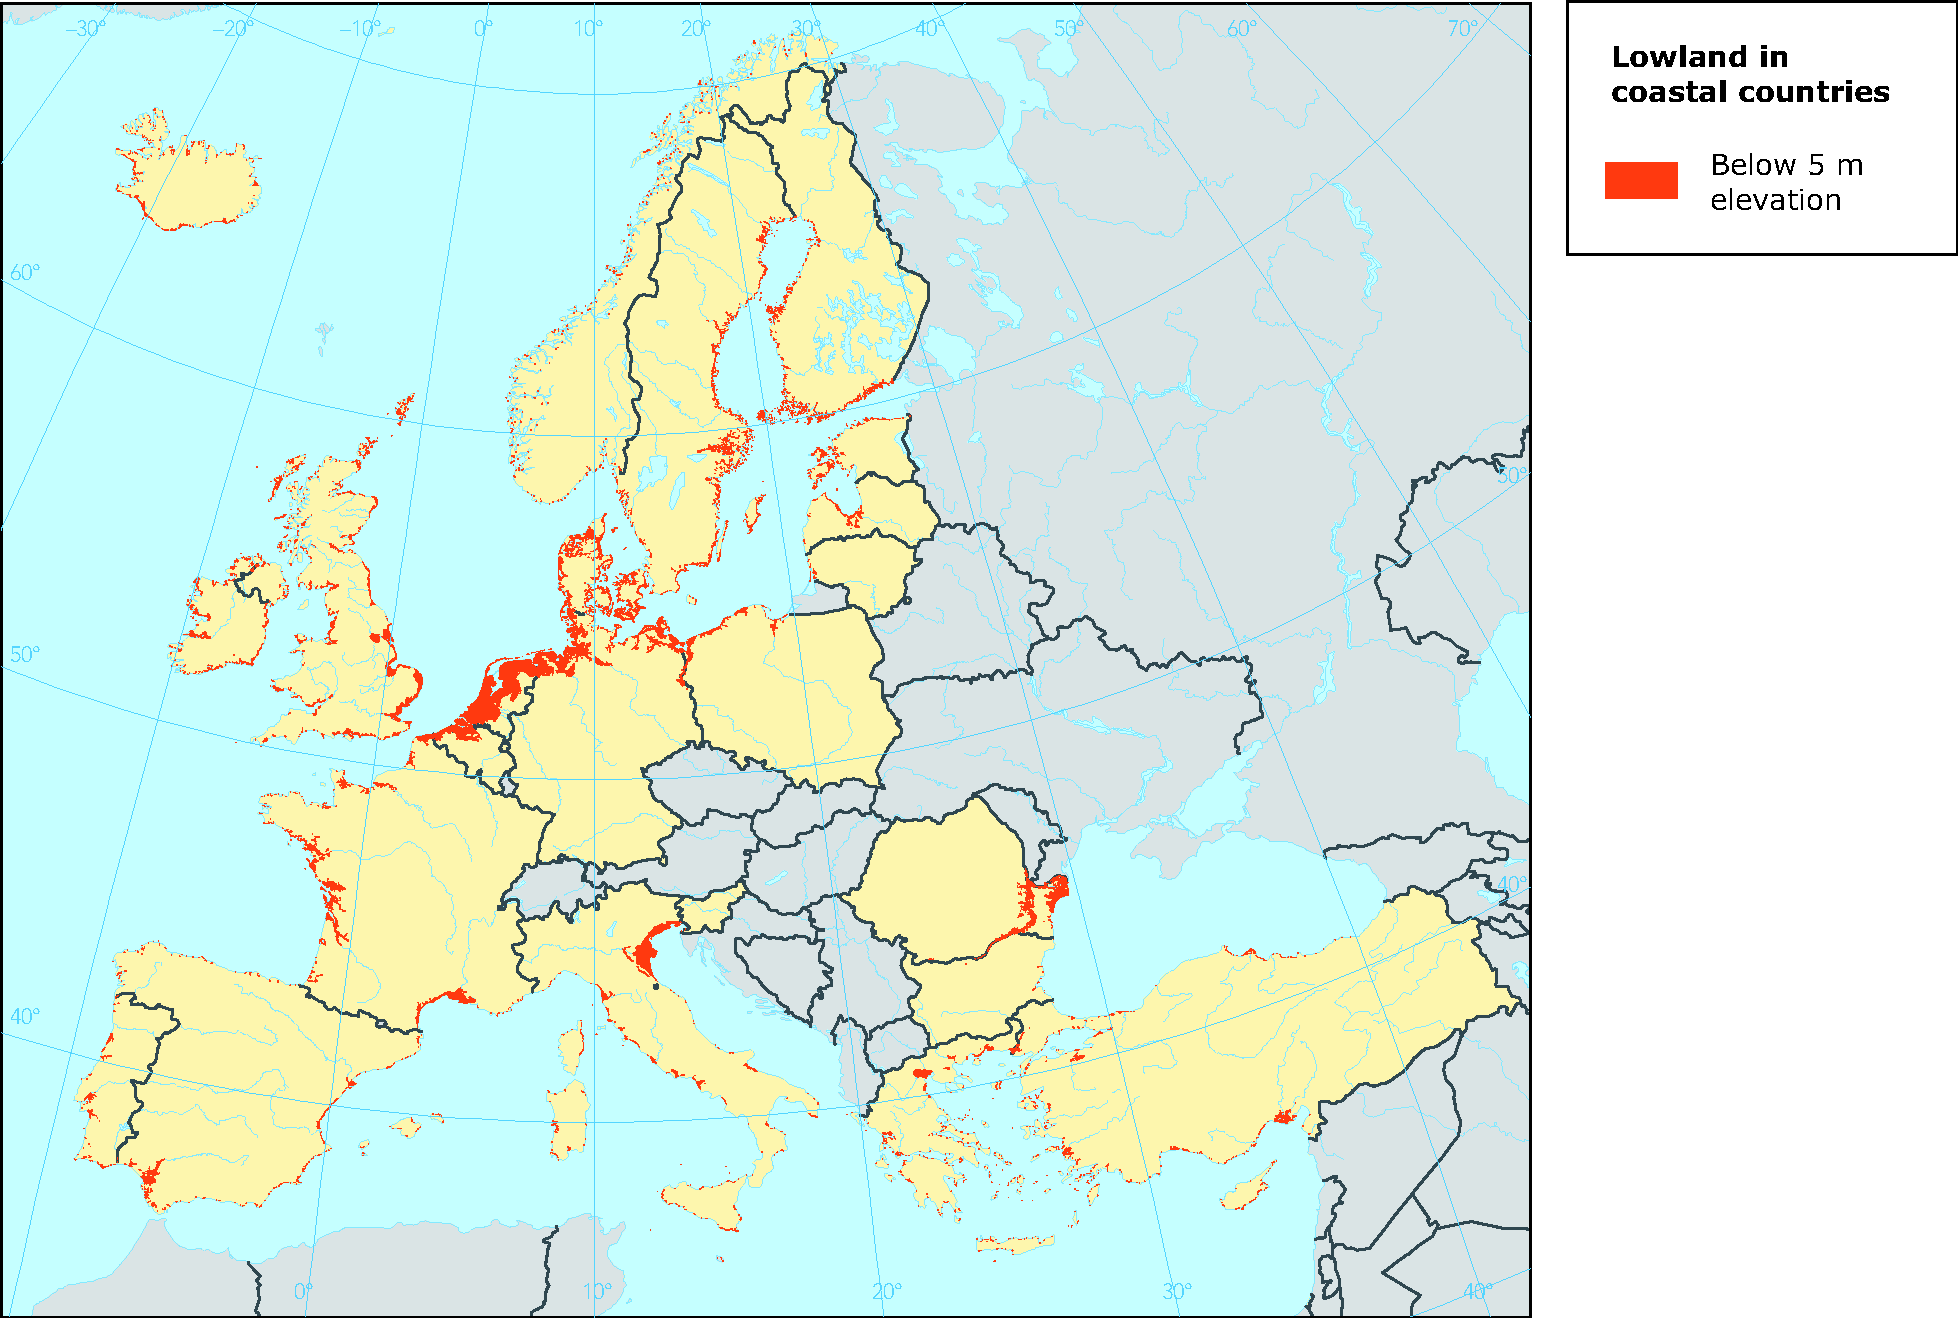 sea level rise map europe European Coastal Lowlands Most Vulnerable To Sea Level Rise sea level rise map europe